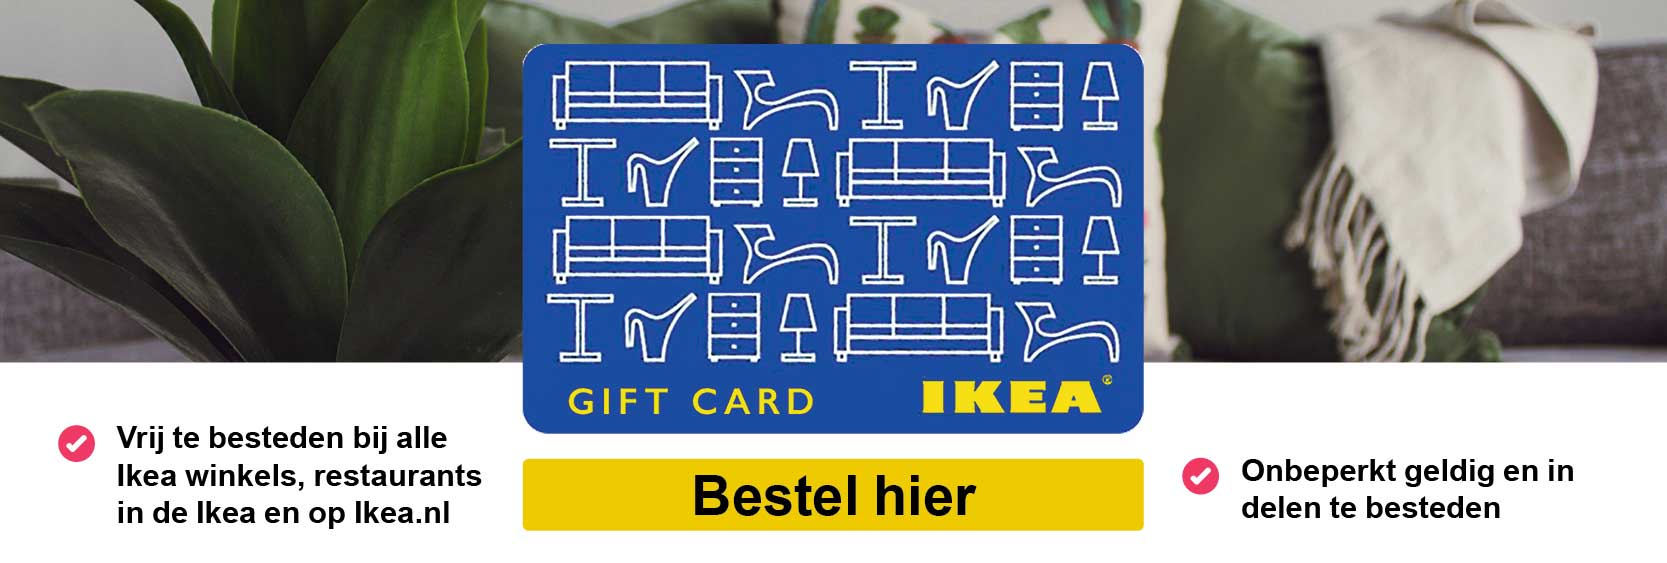 Ikea_banner_def